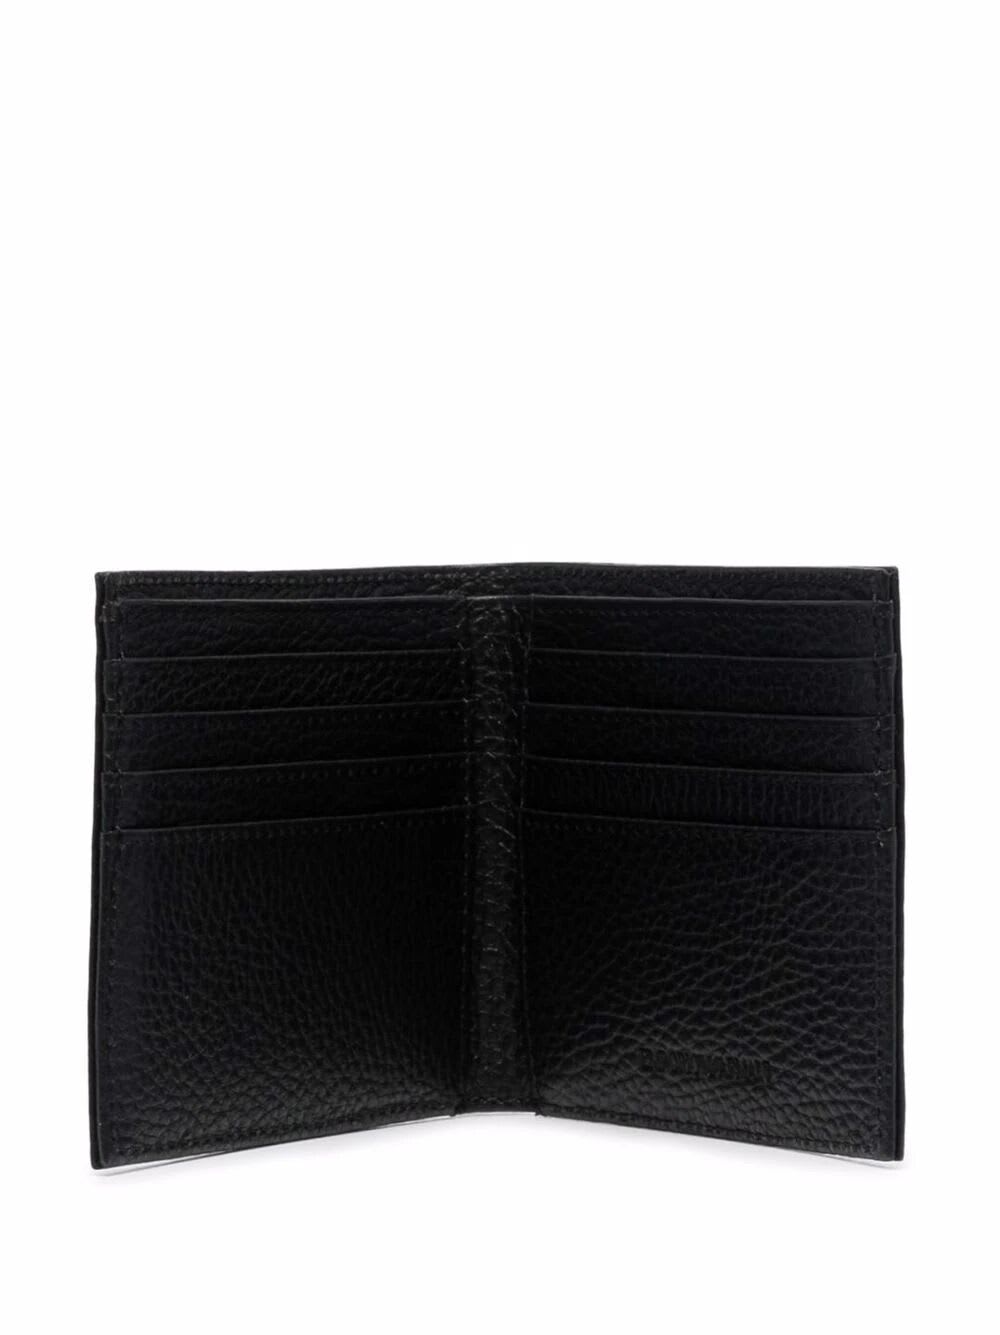 Shop Emporio Armani Bi-fold Wallet In Lt Grey Black